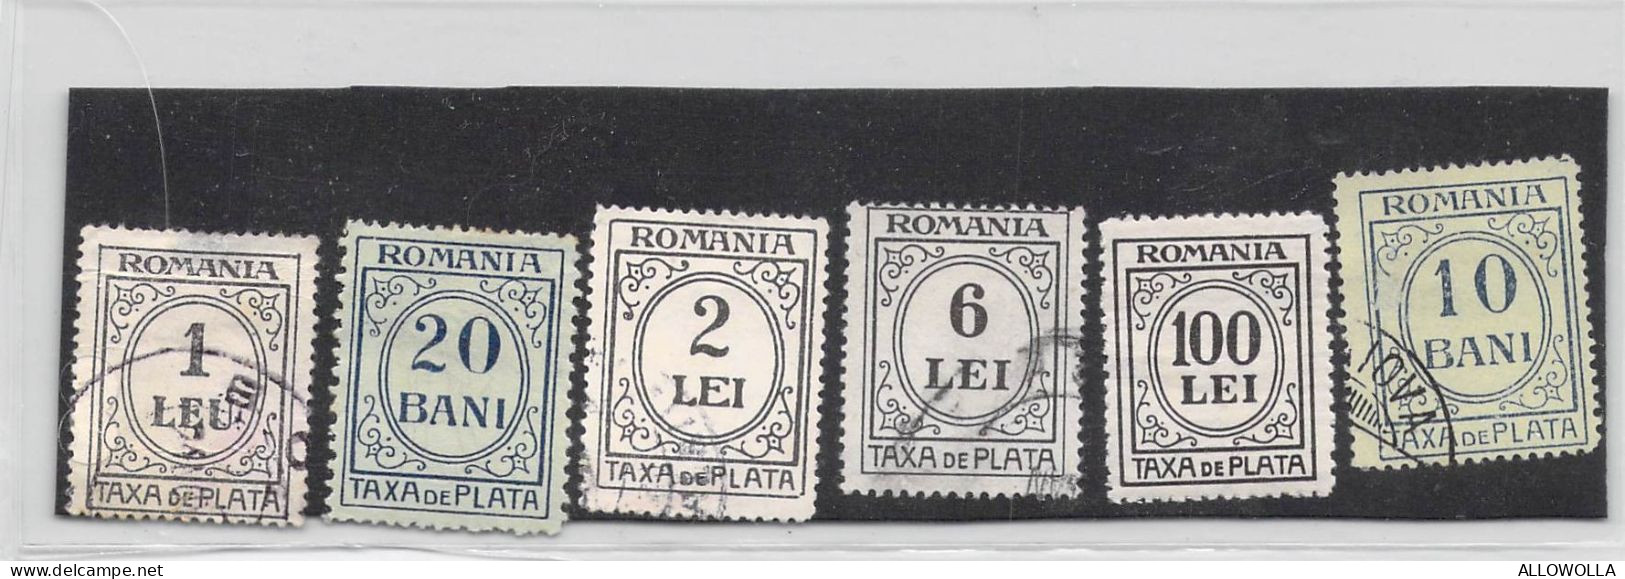 22186 " ROMANIA-TAXA DE PLATA-6 VALORI "  1 LEU E 20 BANI LINGUELLATI - Strafport